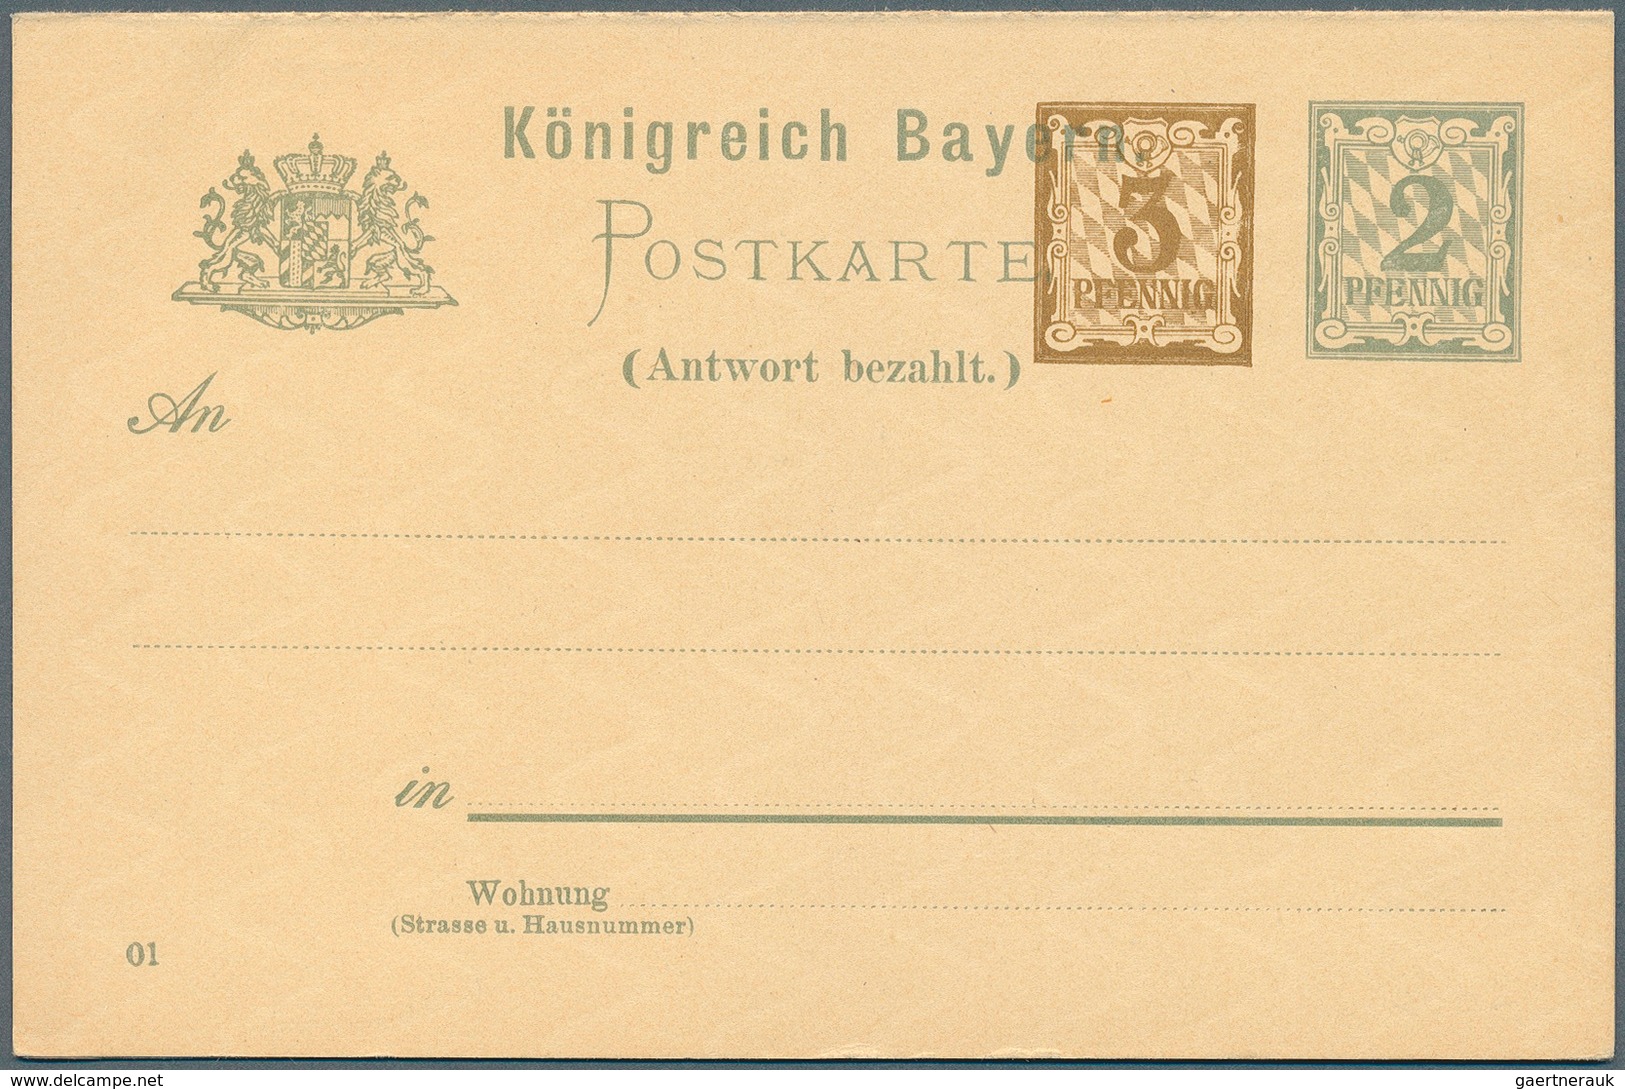 31227 Bayern - Ganzsachen: 1873/1919. Sammlung von 88 besseren, ungebrauchten POSTKARTEN ab der 1. Nummer.